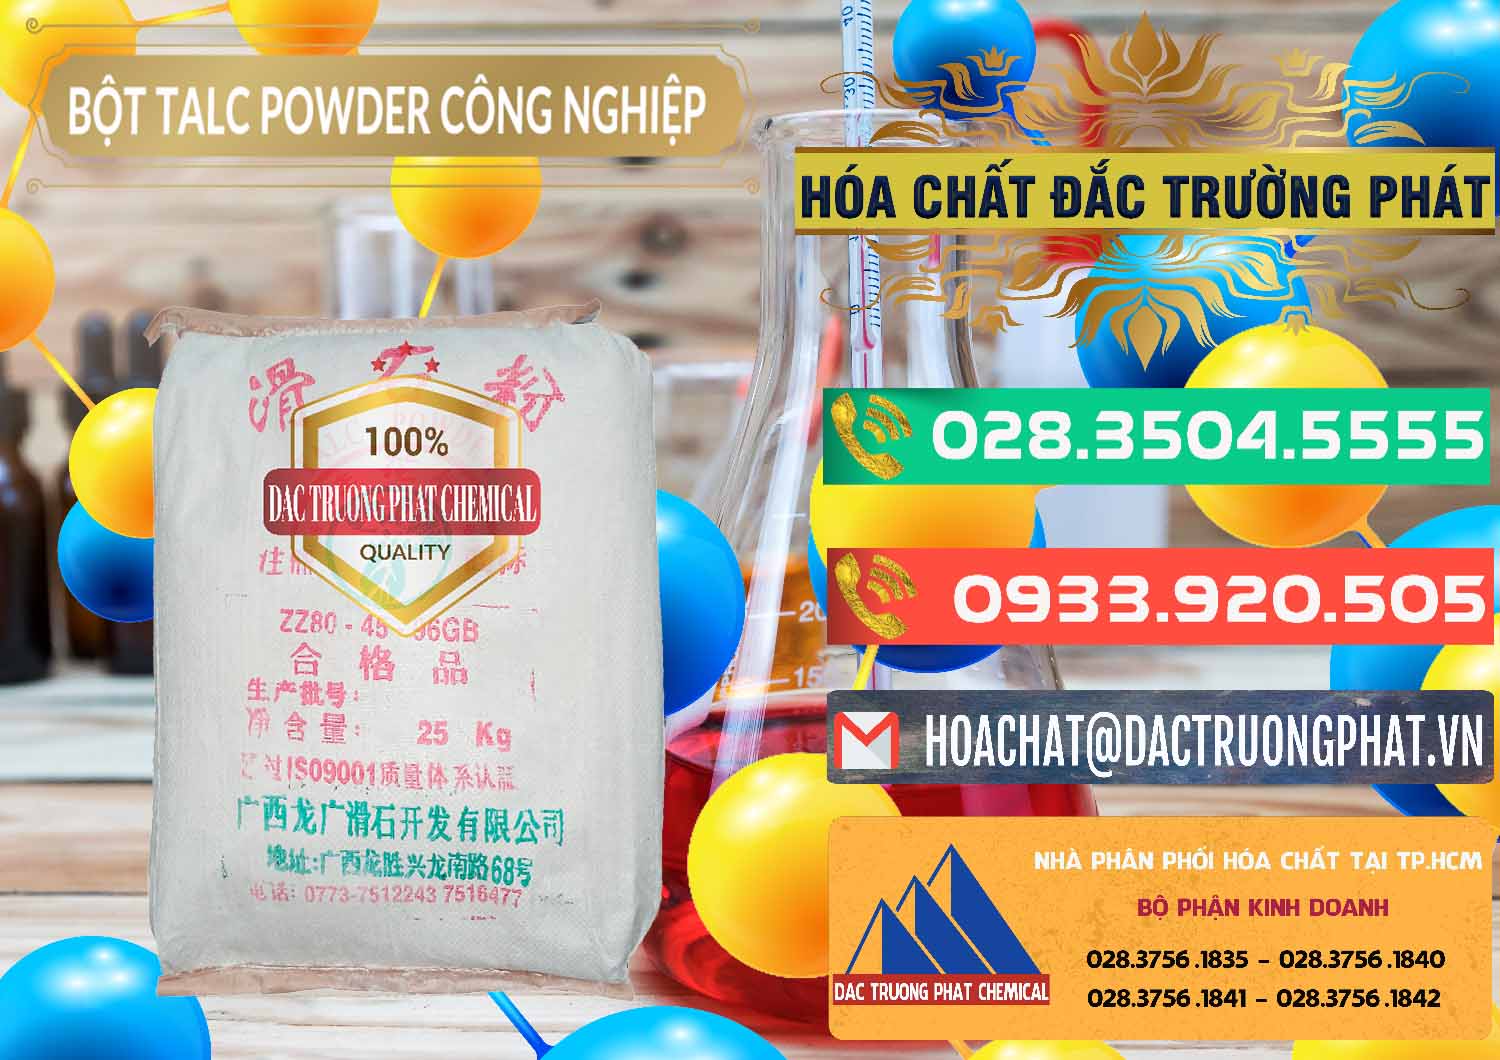 Công ty bán - phân phối Bột Talc Powder Công Nghiệp Trung Quốc China - 0037 - Cty chuyên bán & cung cấp hóa chất tại TP.HCM - congtyhoachat.com.vn